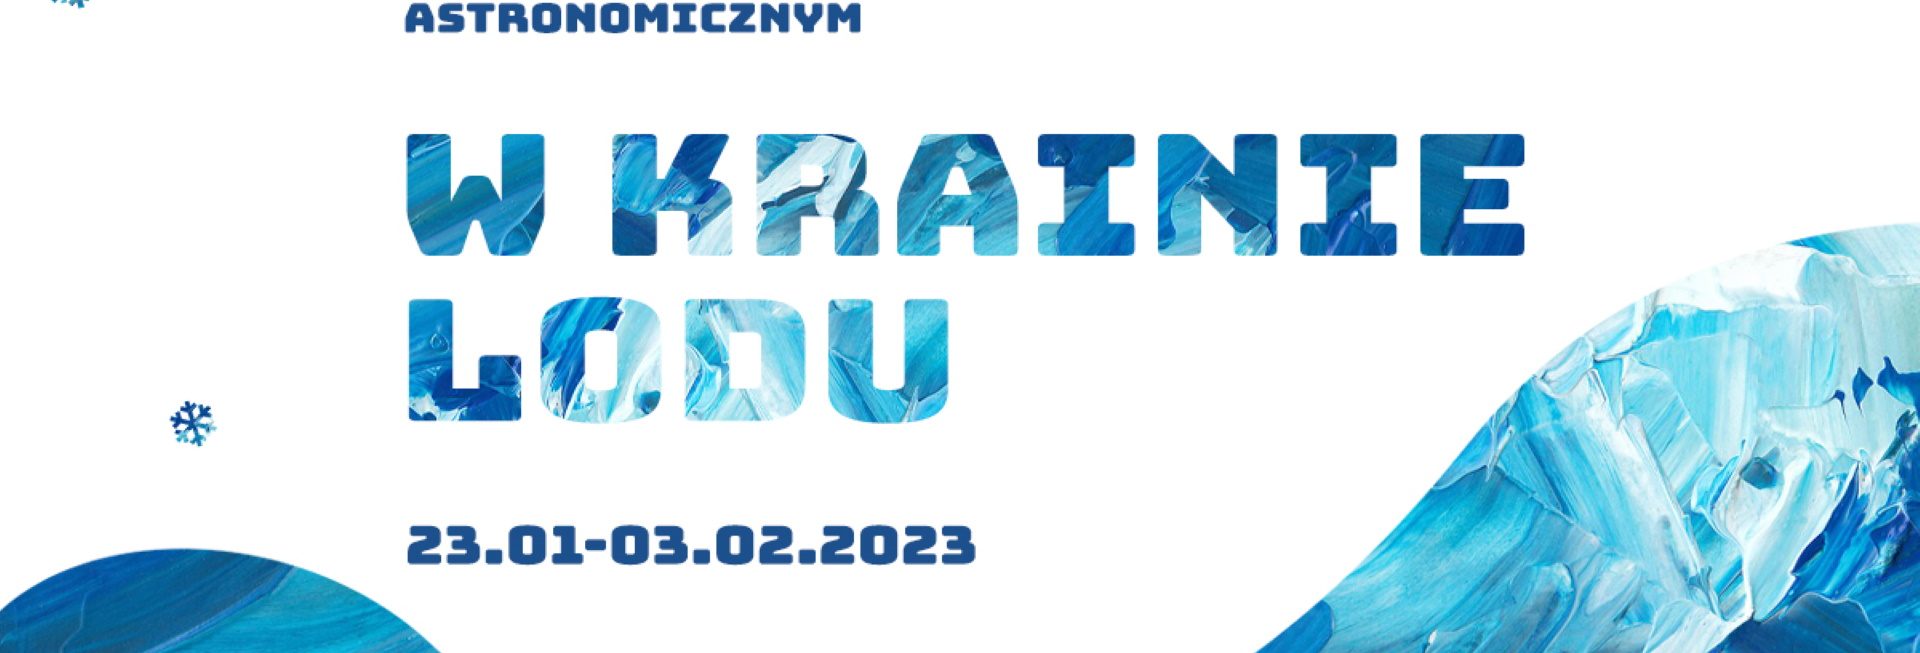 Plakat zapraszający od 23 stycznia do 3 lutego 2023 r. do Olsztyńskiego Planetarium na ferie w Planetarium "W KRAINIE LODU" Olsztyn 2023.